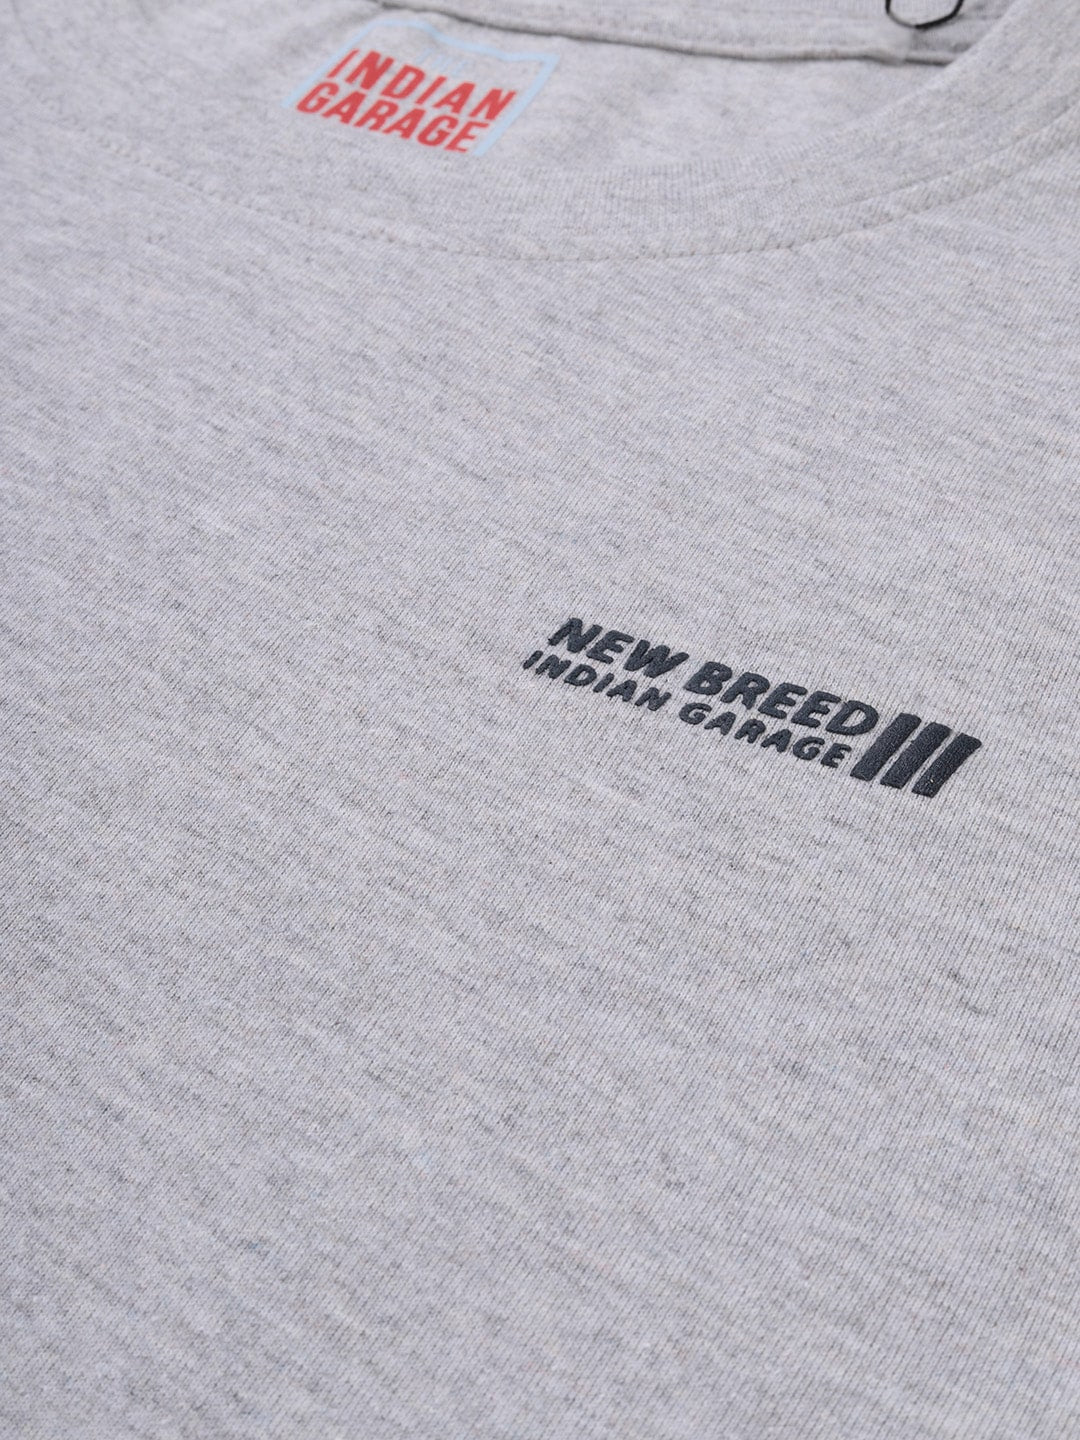 Shop Men Graphic Print T-Shirt Online.